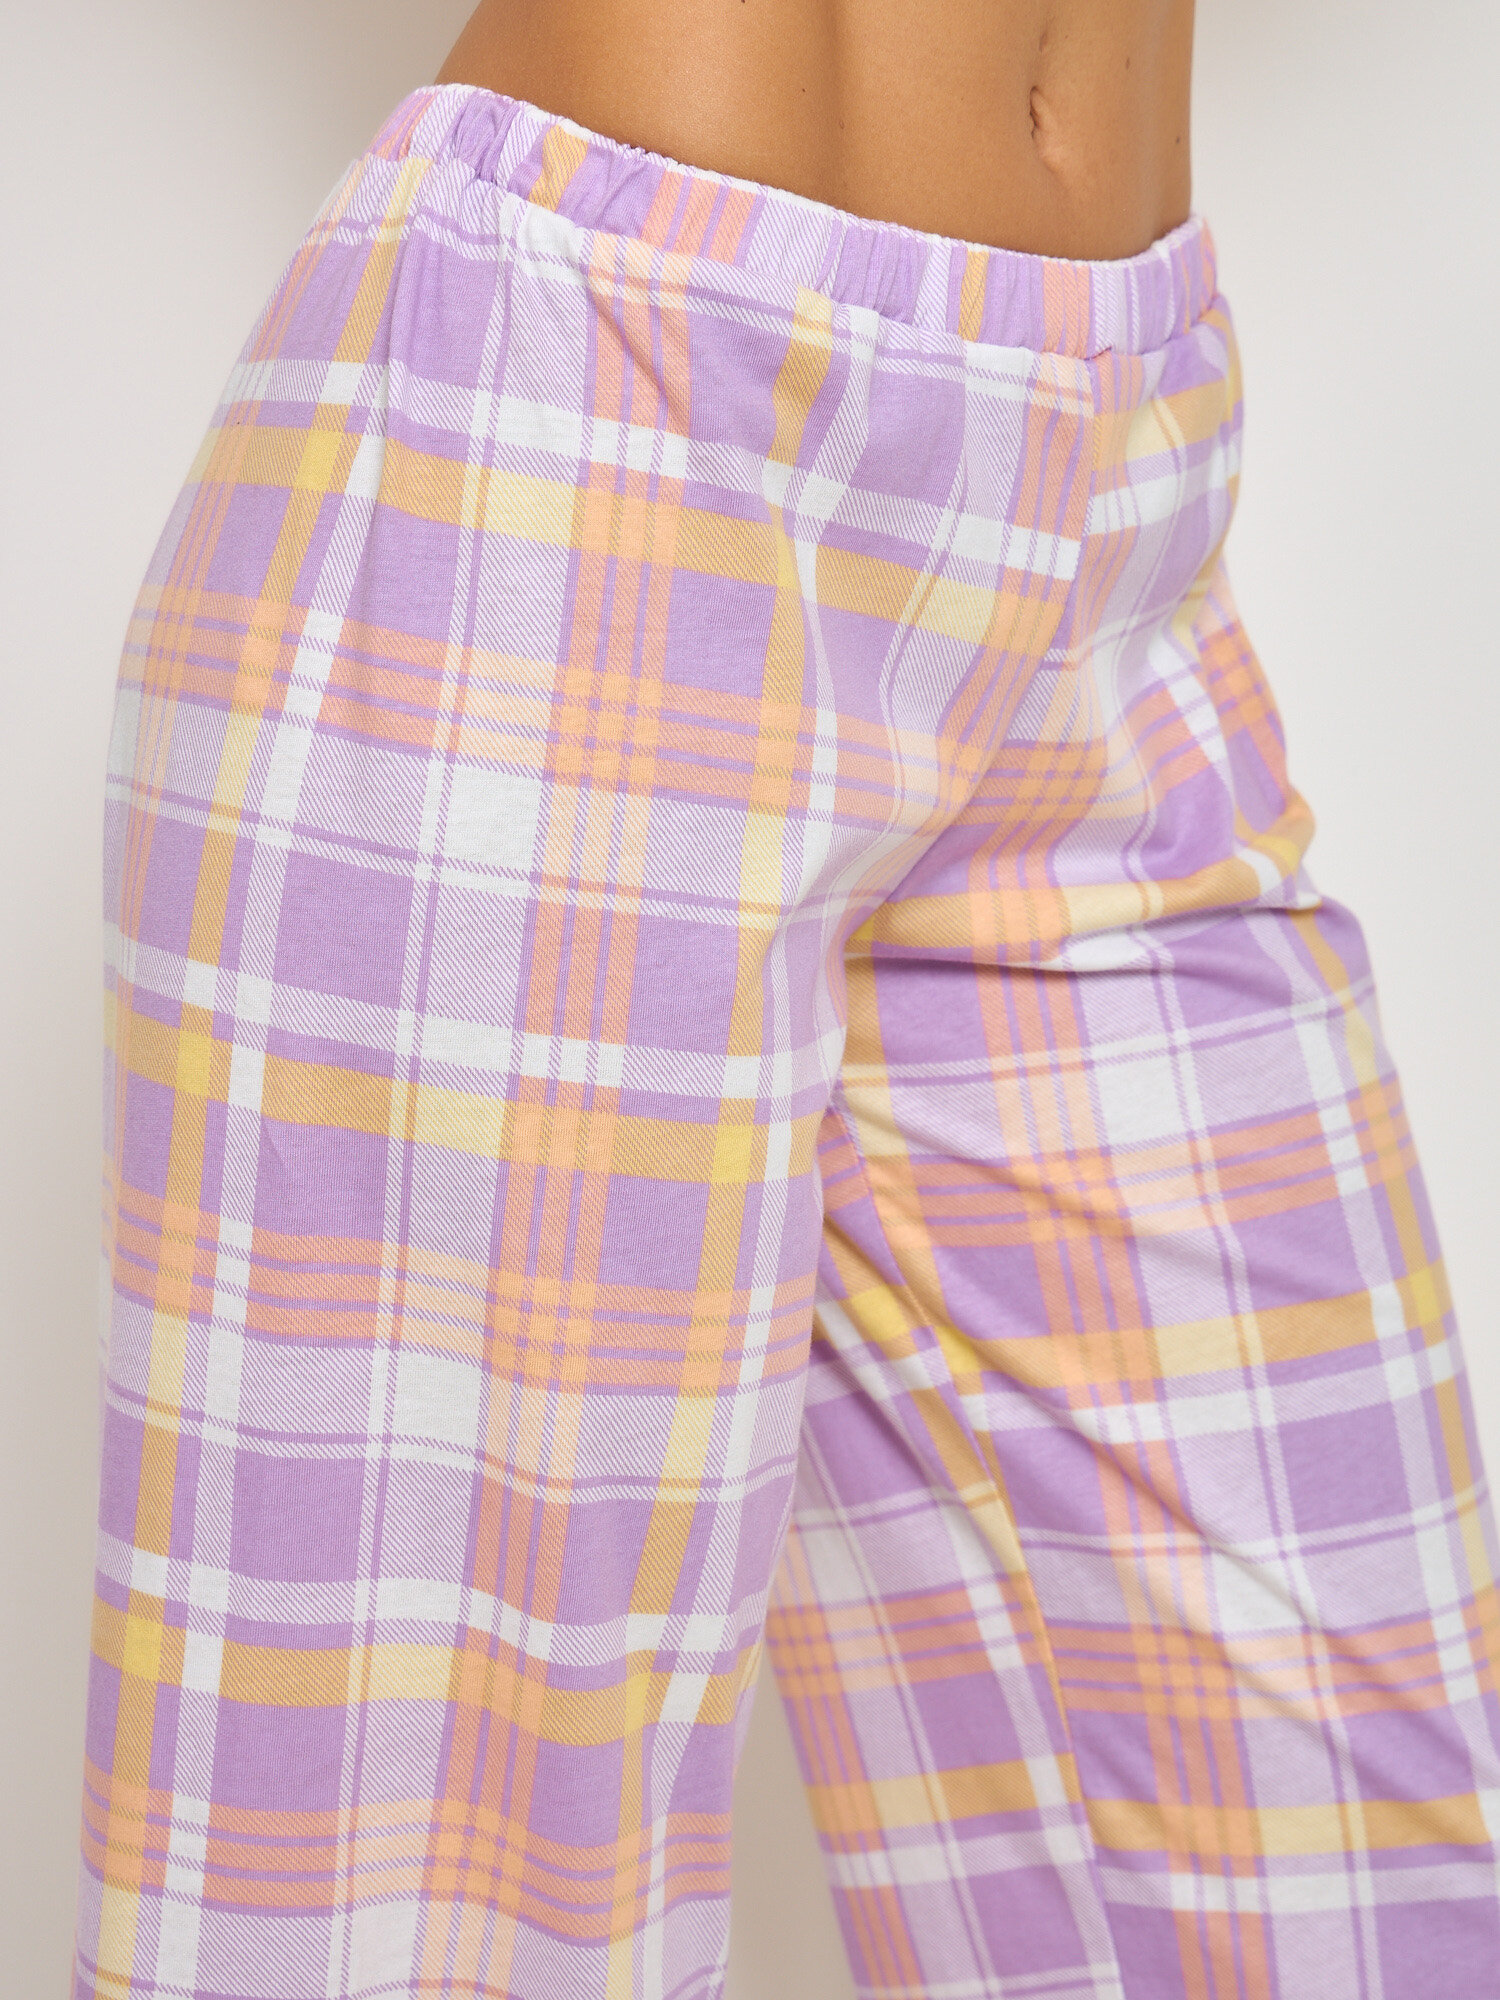 Пижама PIRAMIDA "Персик", домашний комплек футболка с брюками палаццо - фотография № 11